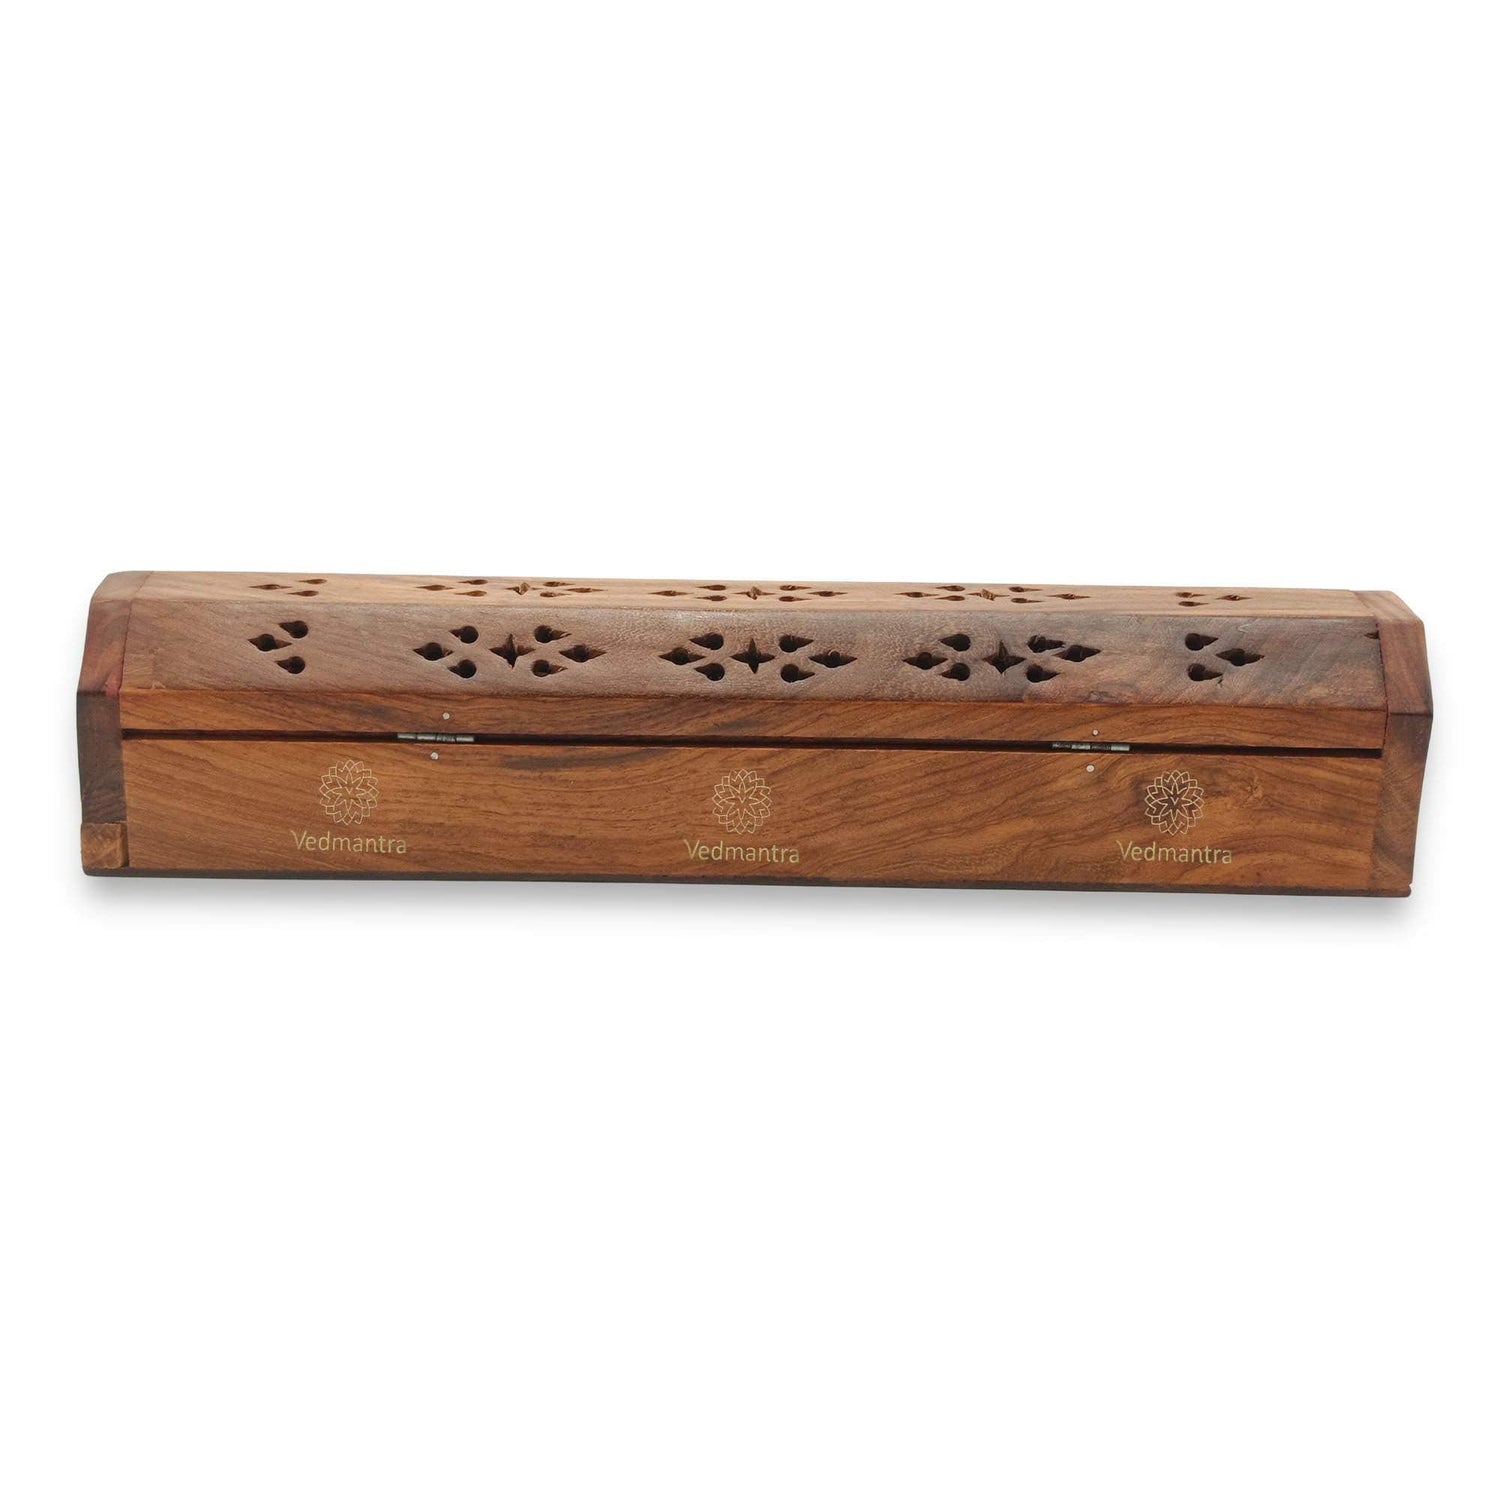 Vedmantra Coffin Incense Stick Holder